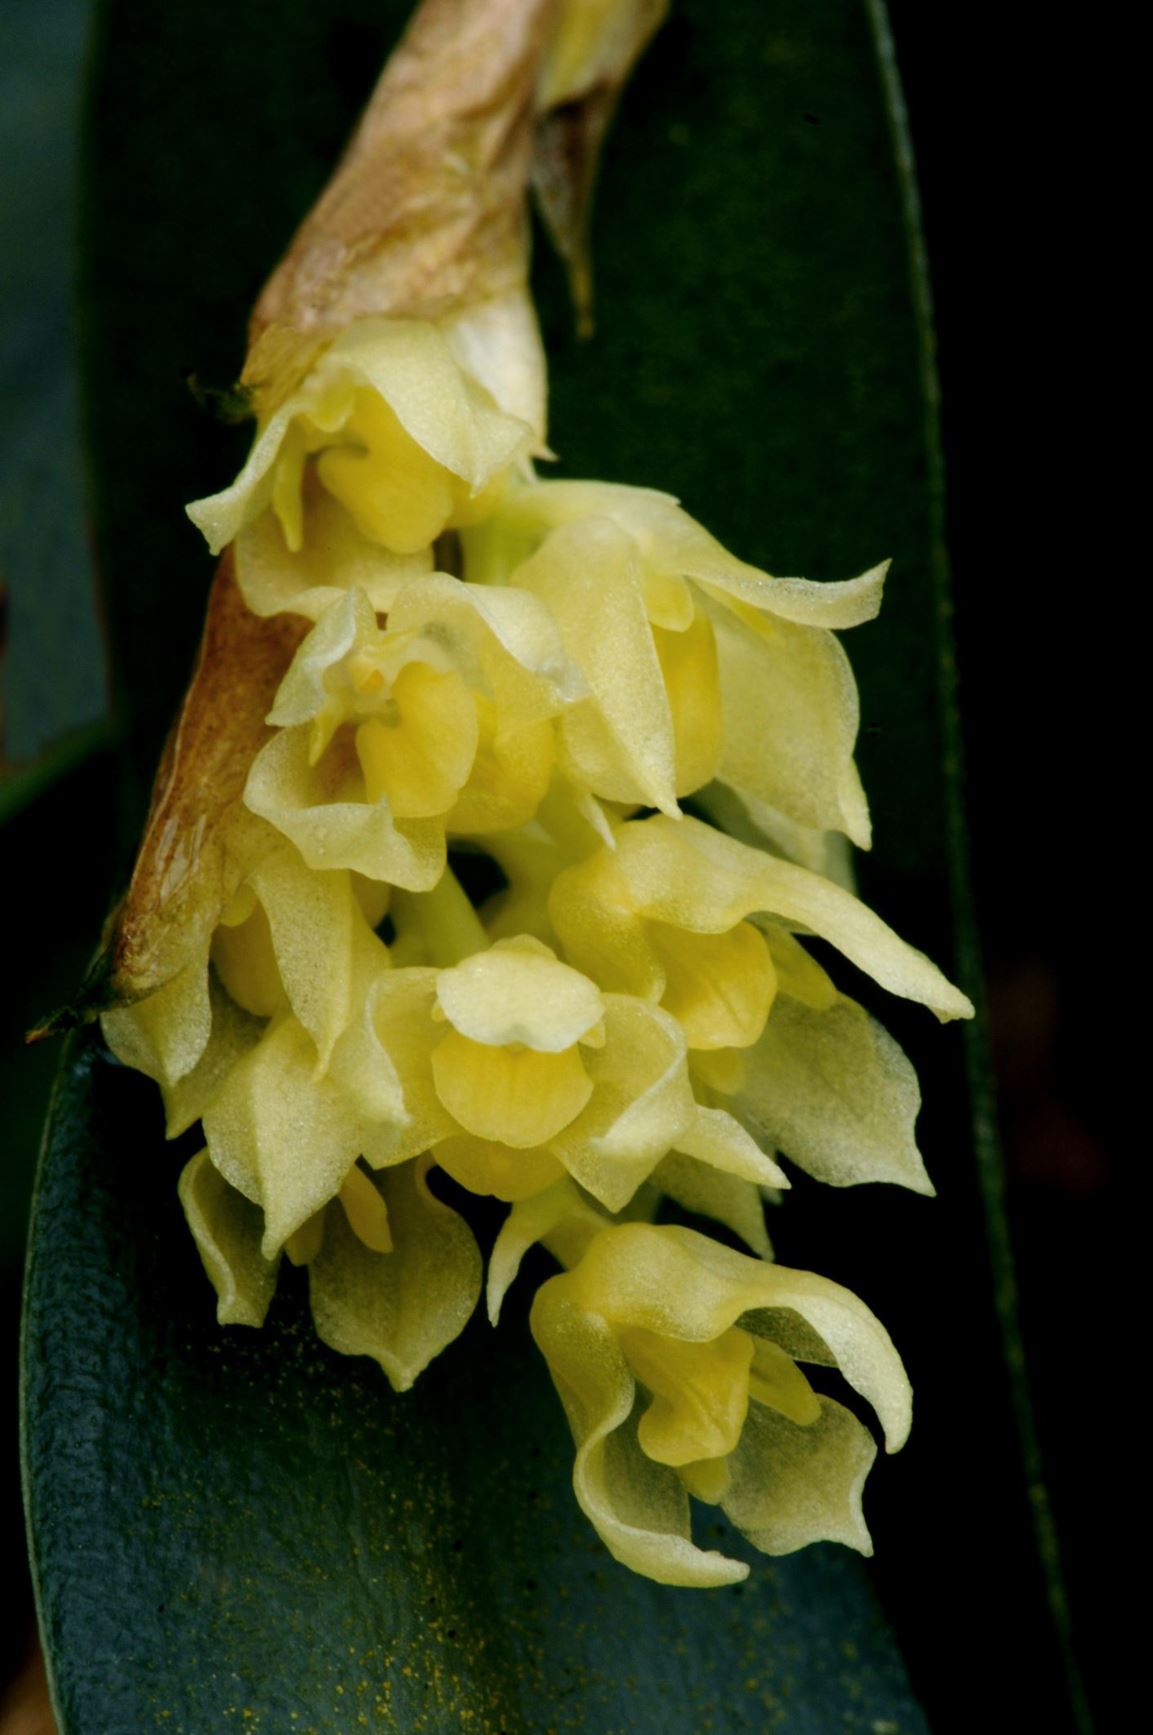 Bulbophyllum perpendiculare